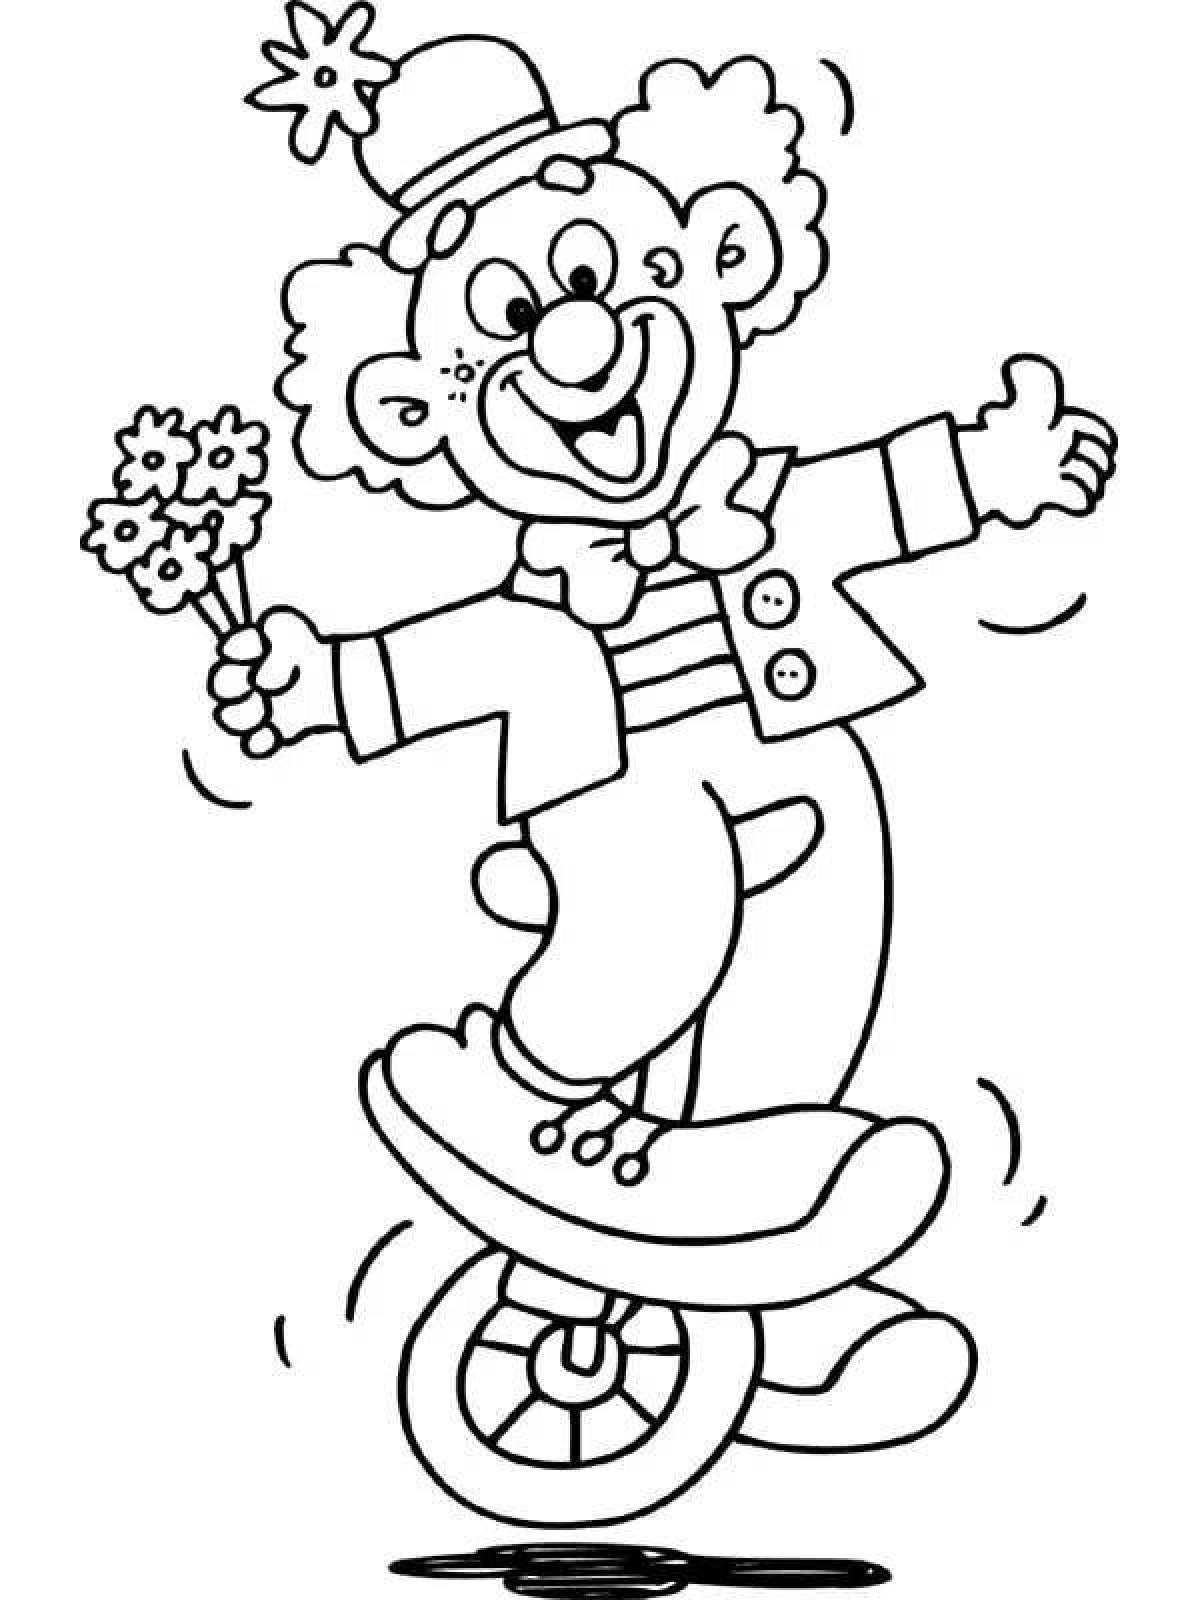 Клоун раскраска для детей 4 5. Клоун раскраска. Клоун раскраска для детей. Клоун для раскрашивания детям. Веселый клоун раскраска.